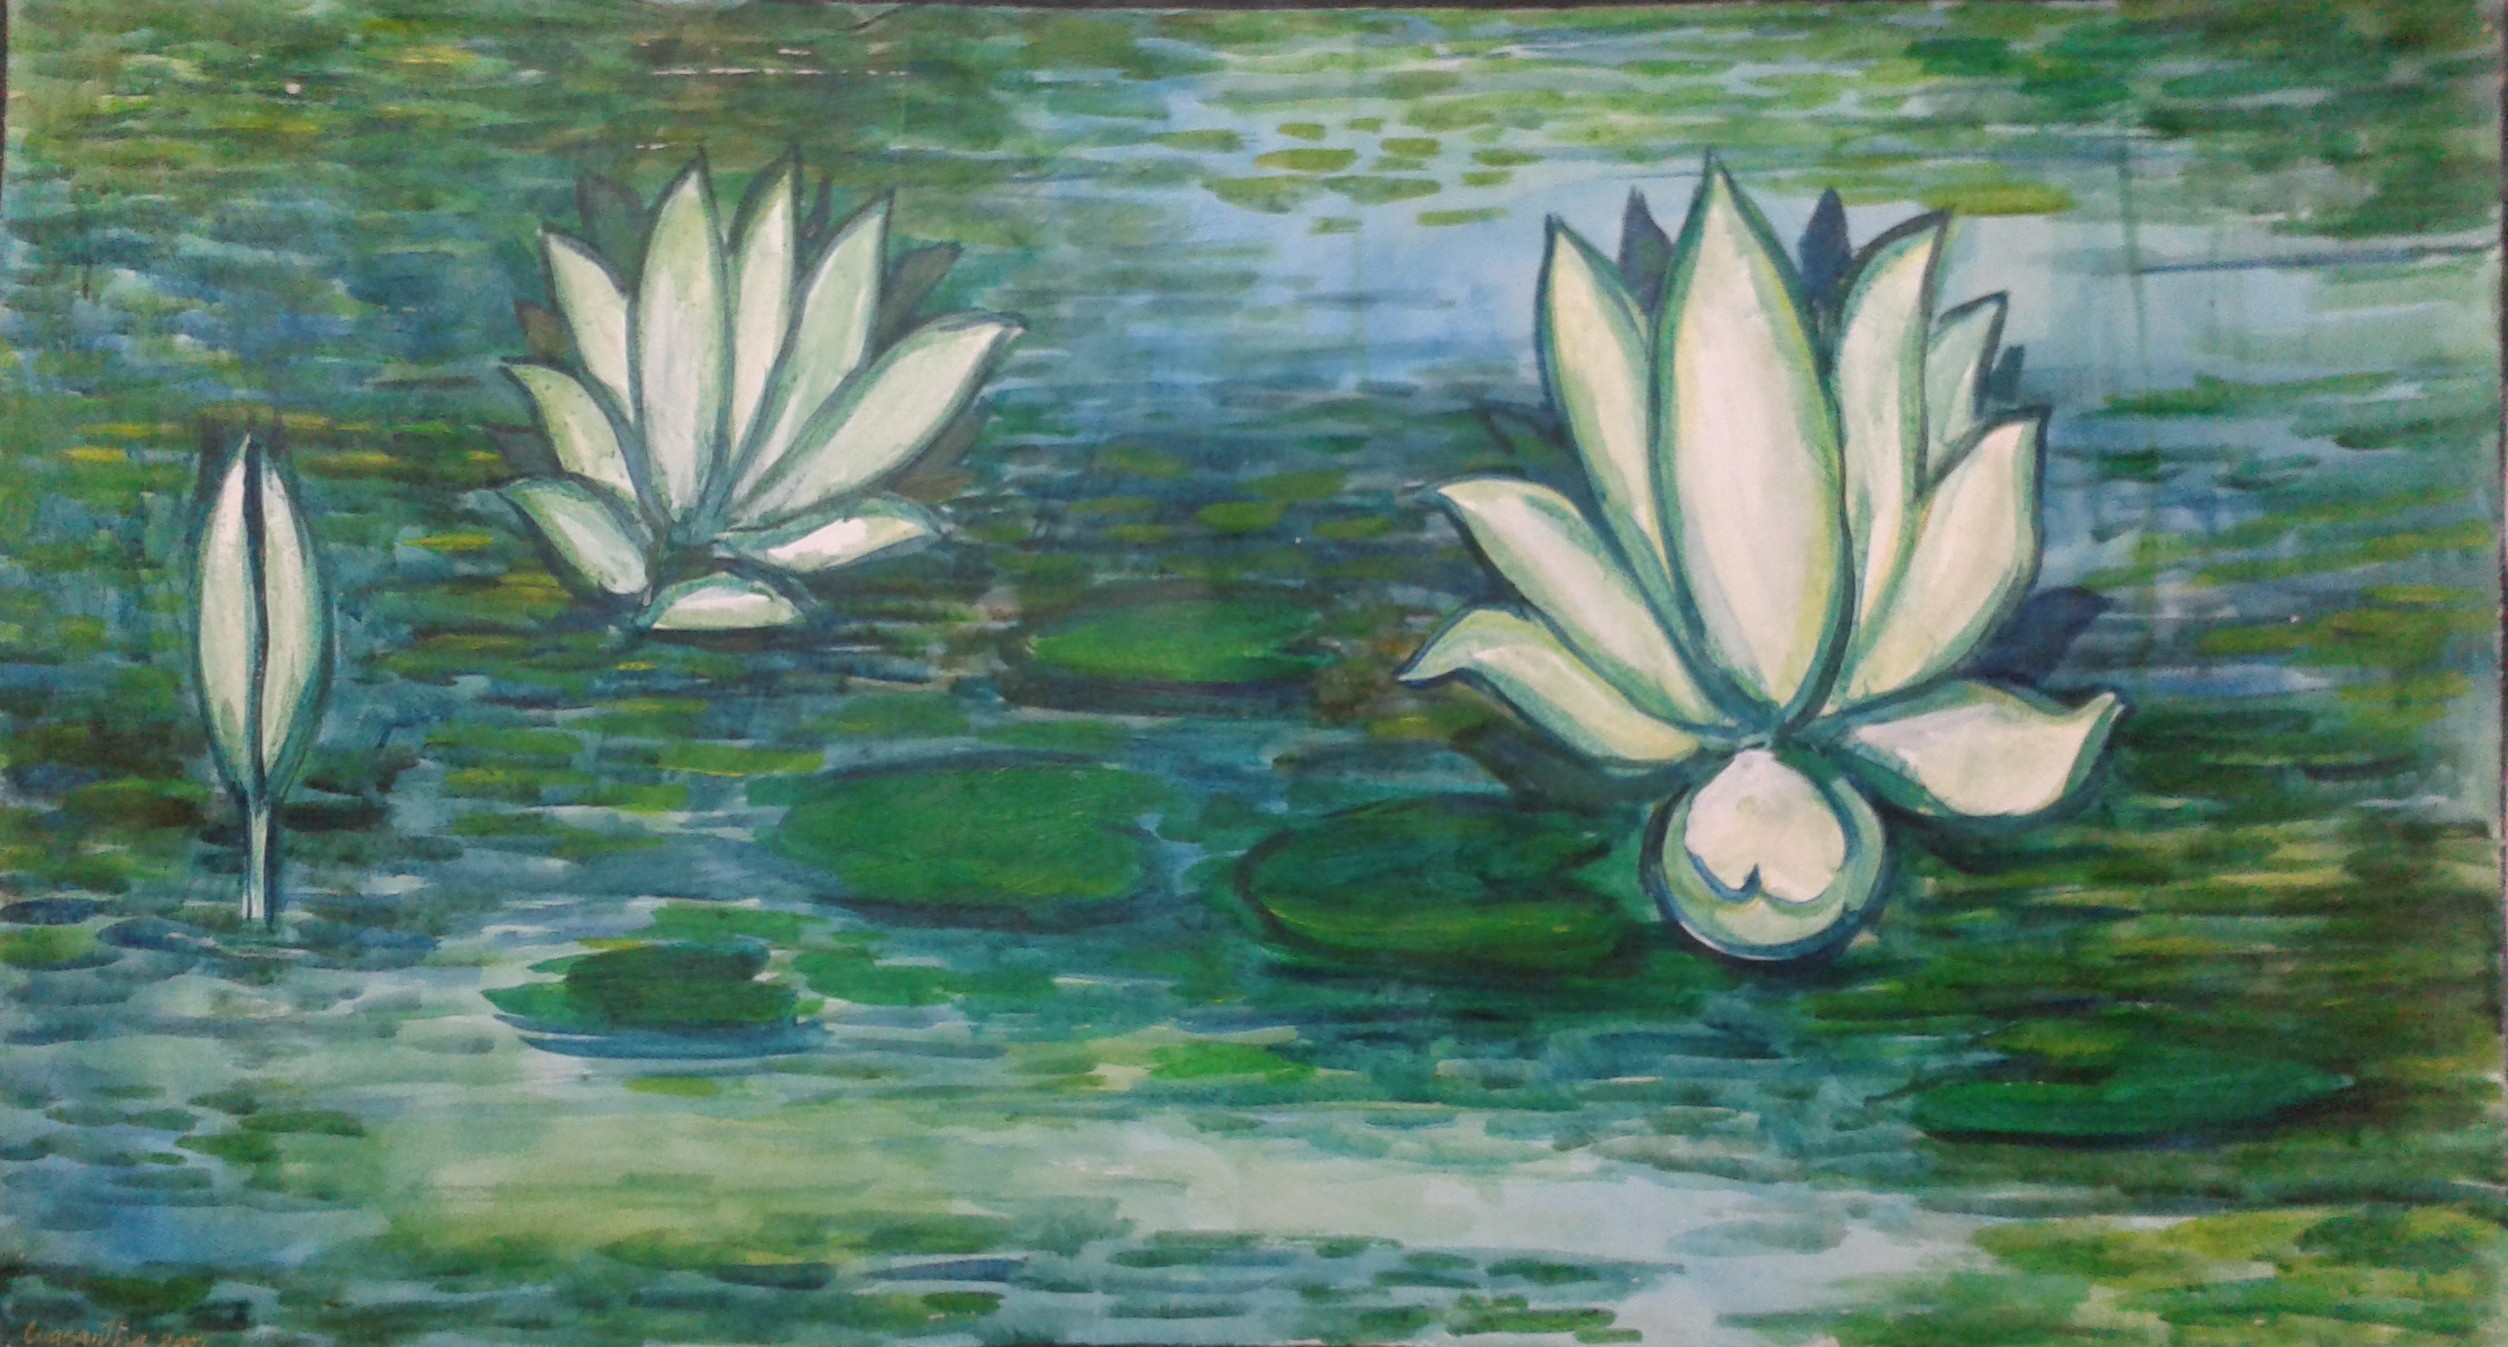 Lotus Pond by Wasantha Namaskara